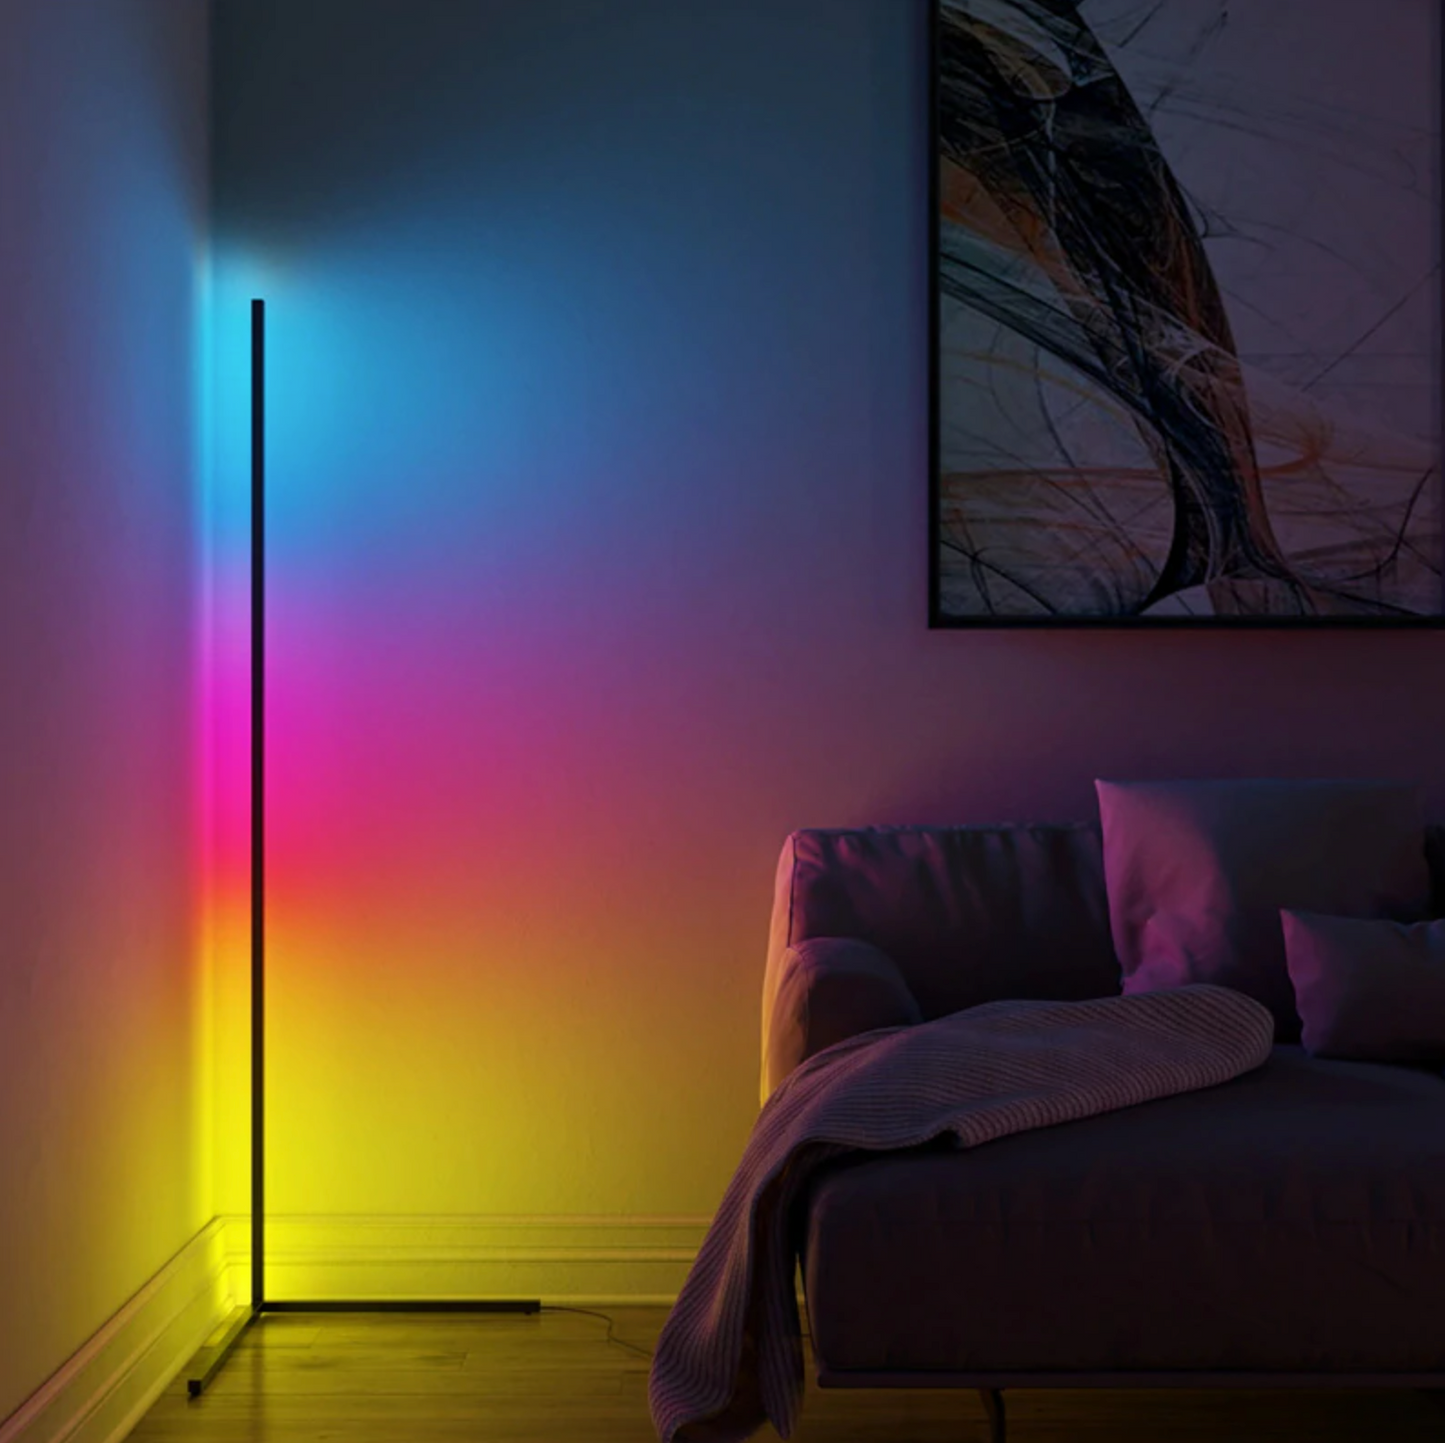 LightArt® LED Floor Lamp